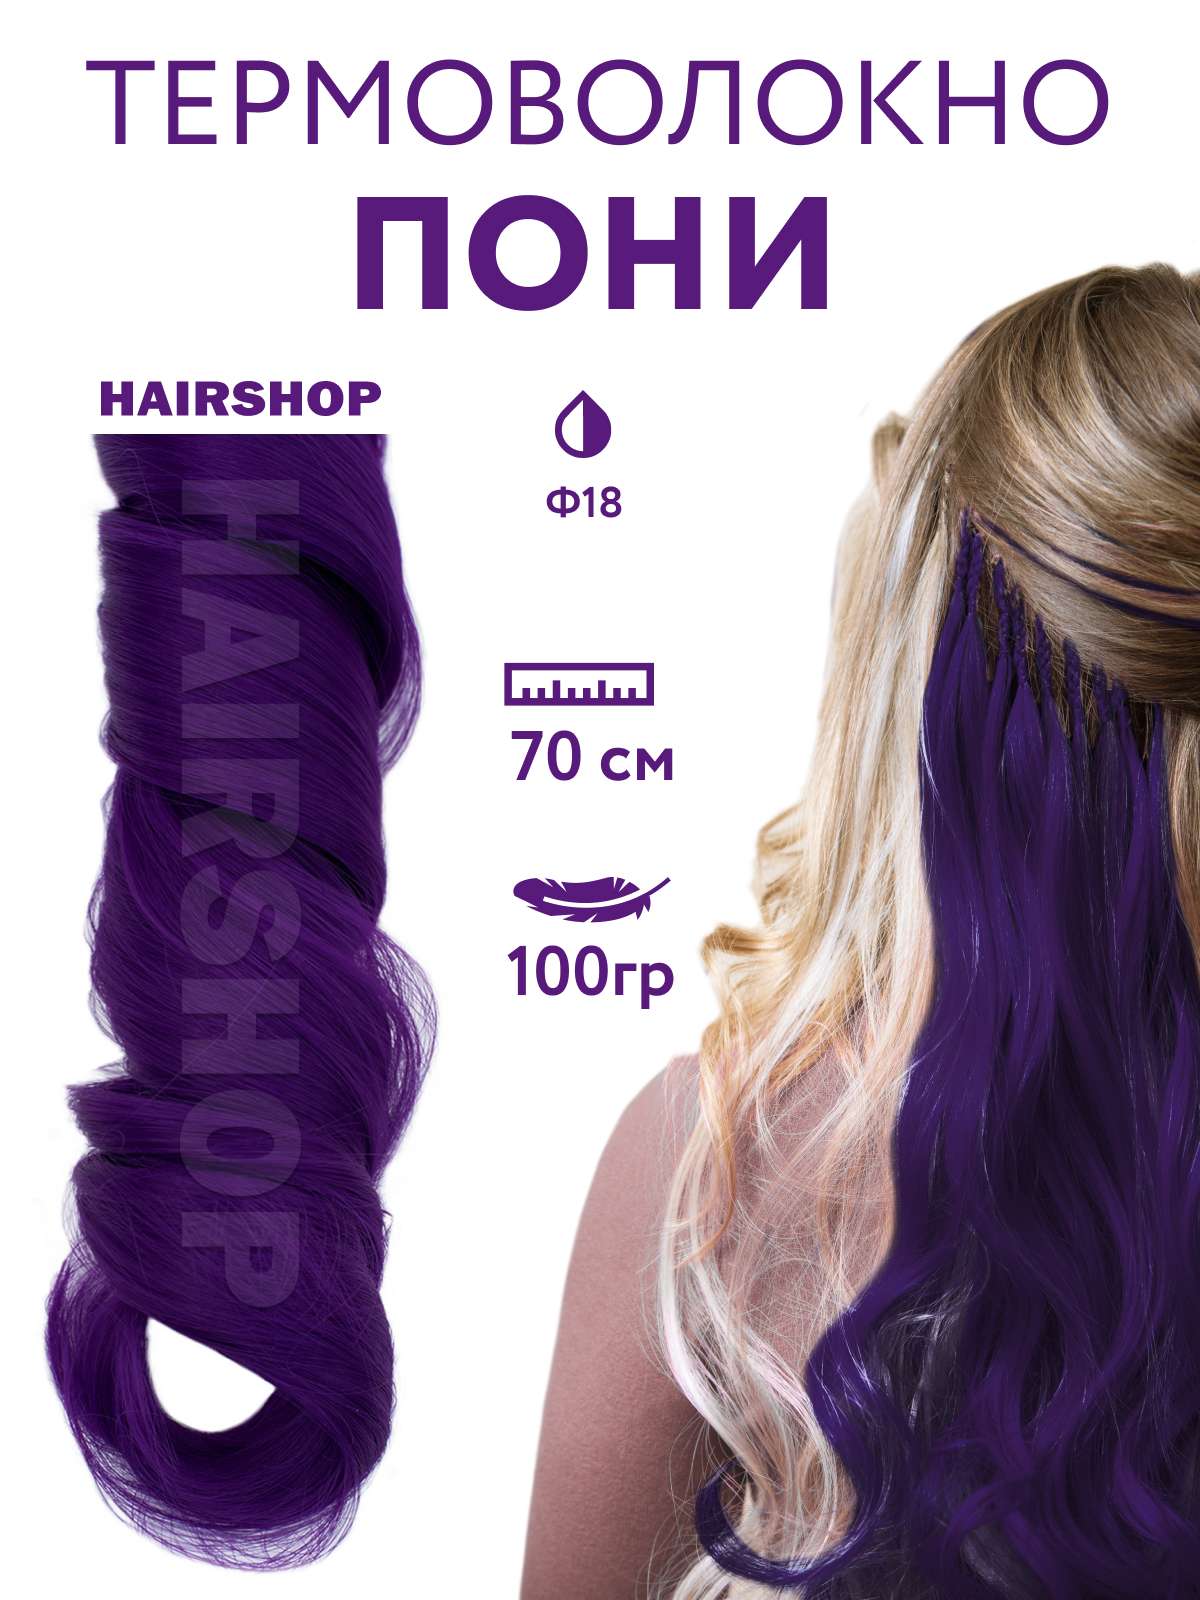 Канекалон HAIRSHOP Пони HairUp для точечного афронаращивания Ф18 Темно-фиолетовый 1,4м учусь читать с конни в гостях у пони